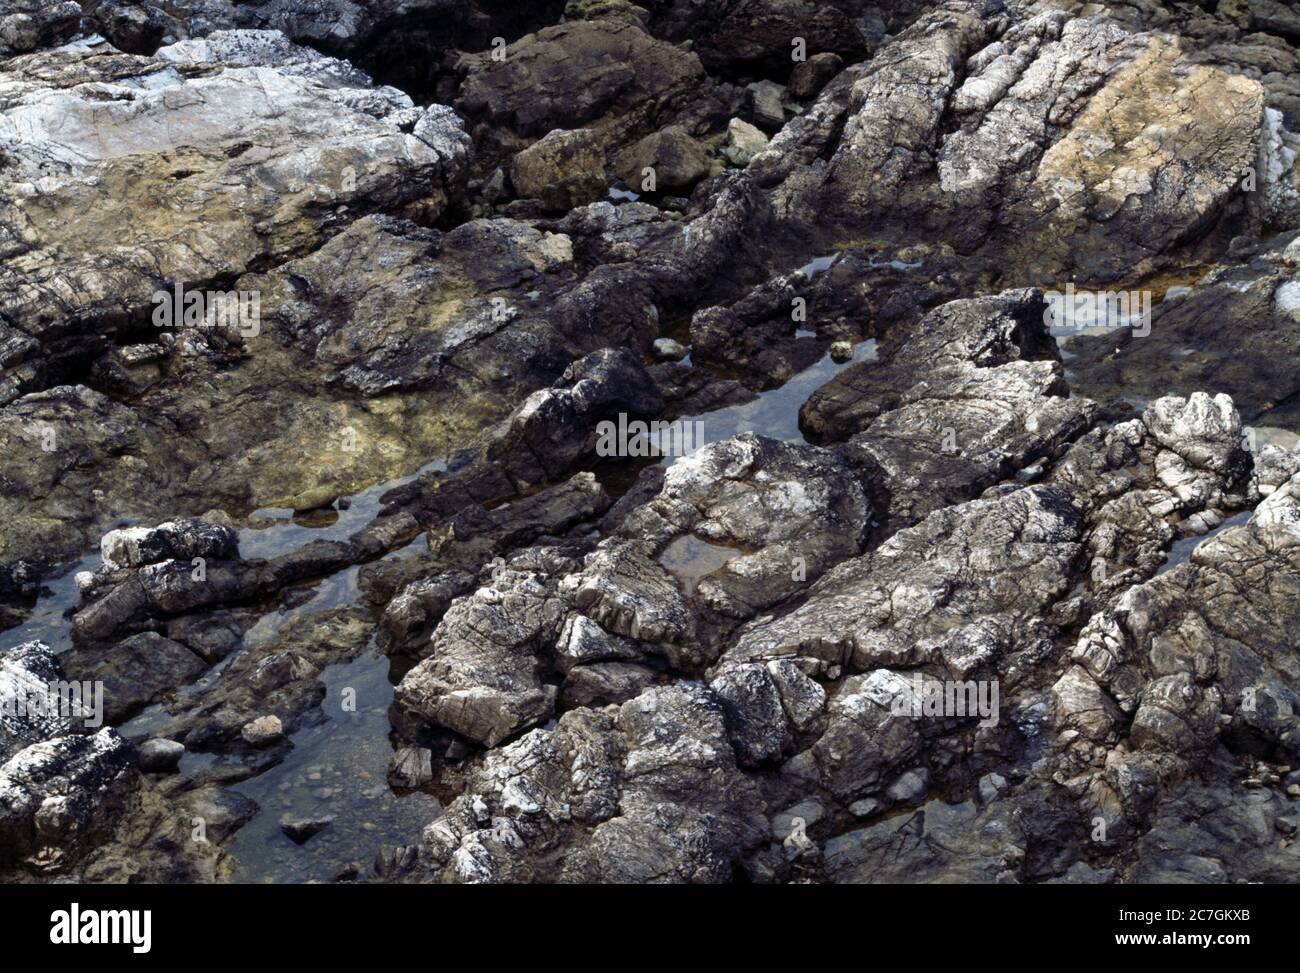 Asturias Spain Rock Pools In Deep Fissures Between Rocks Stockfoto